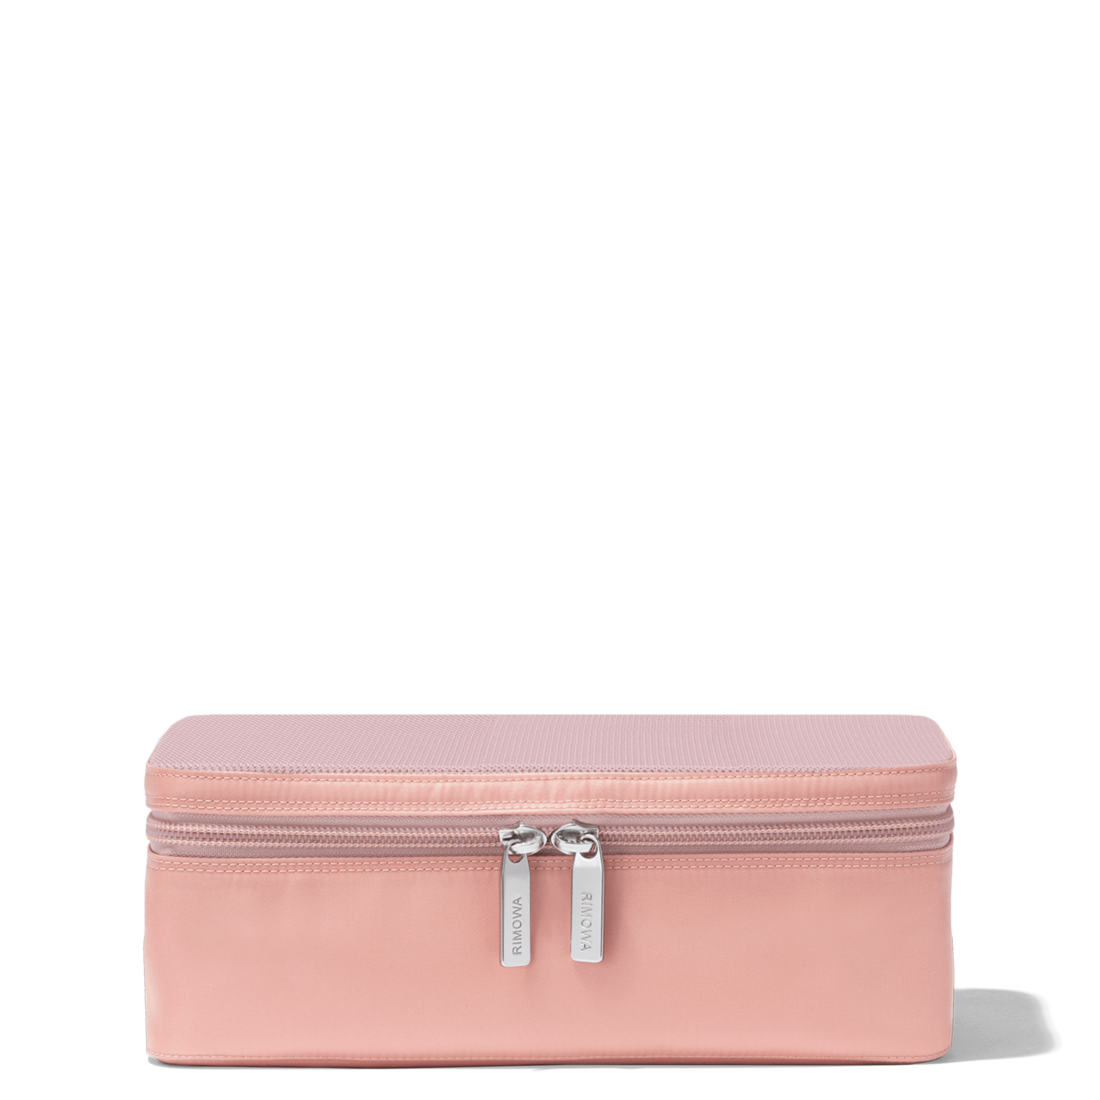 Packing Cube S | Desert Rose Pink | RIMOWA